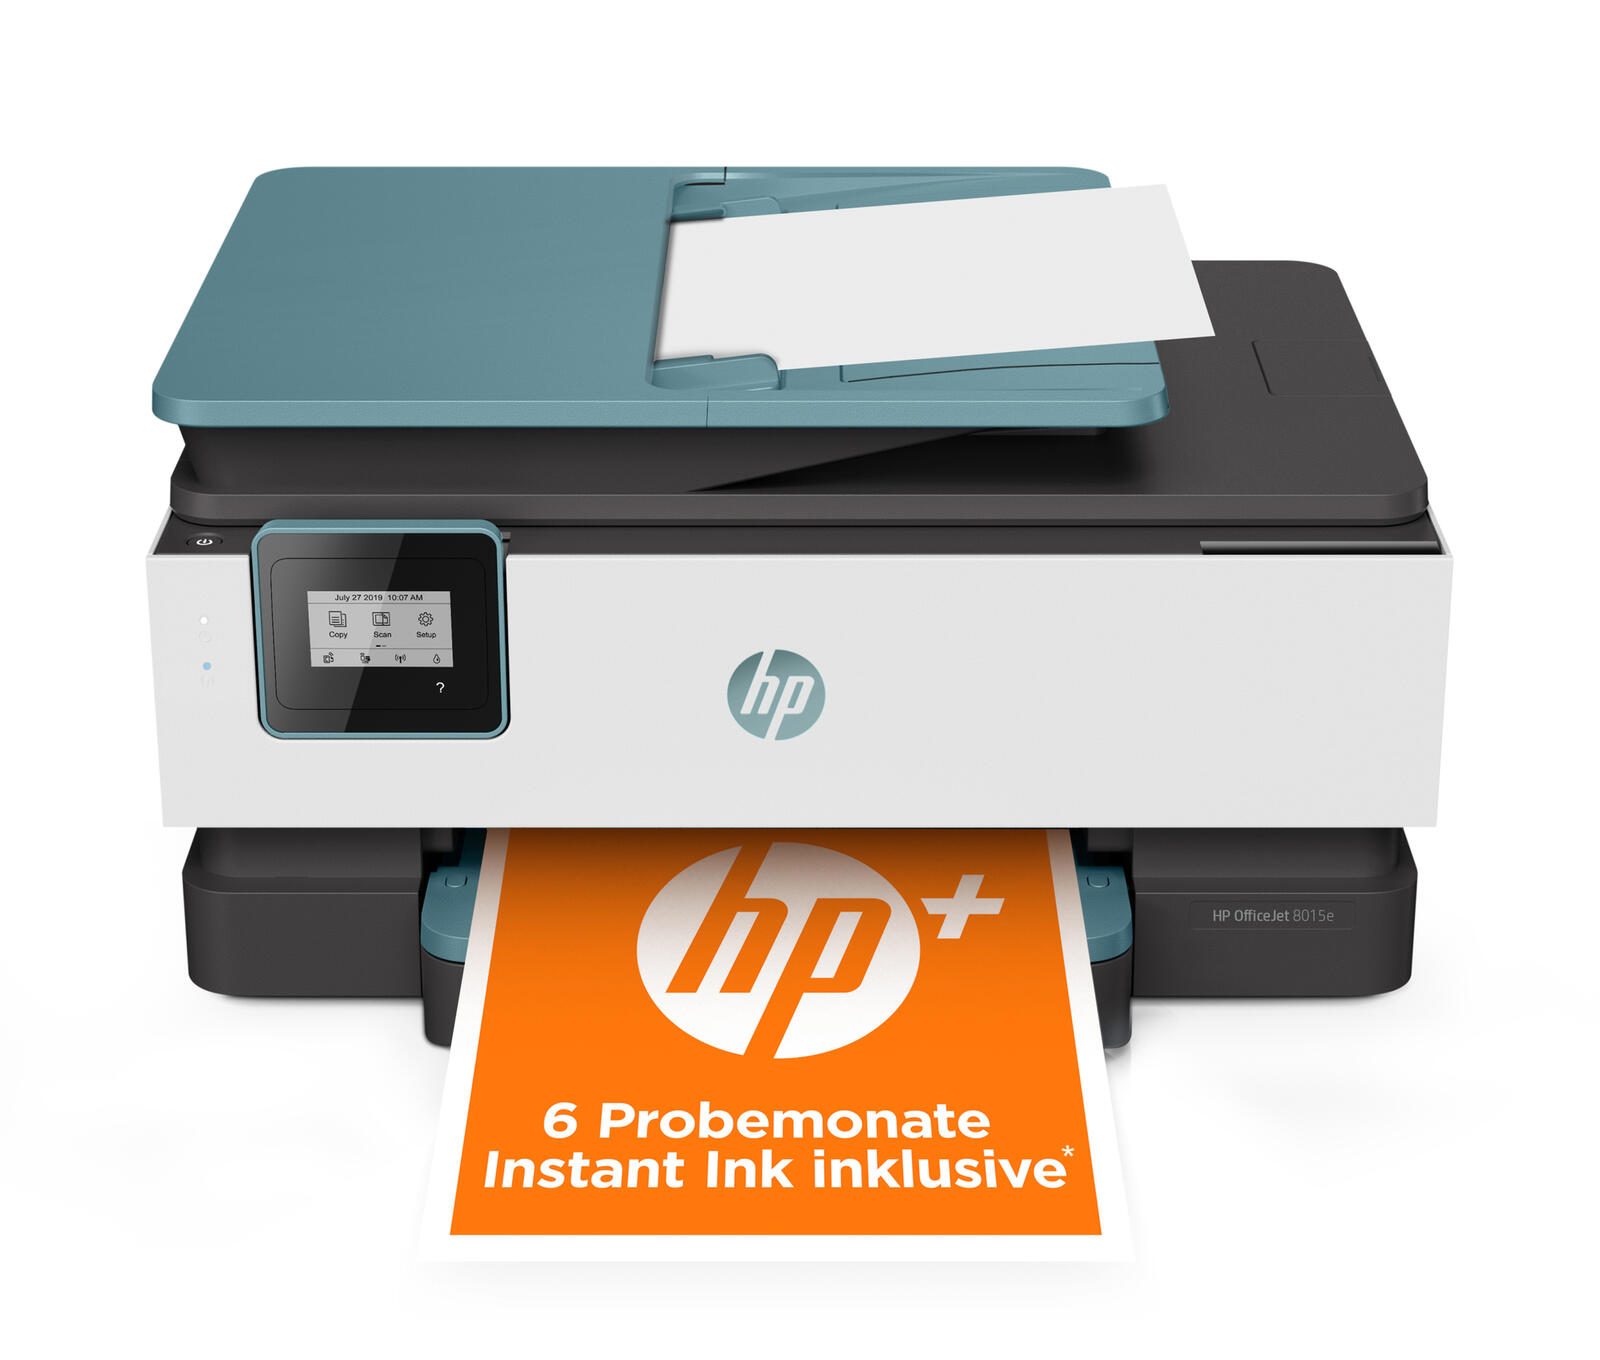 HP OfficeJet Pro 8015 e